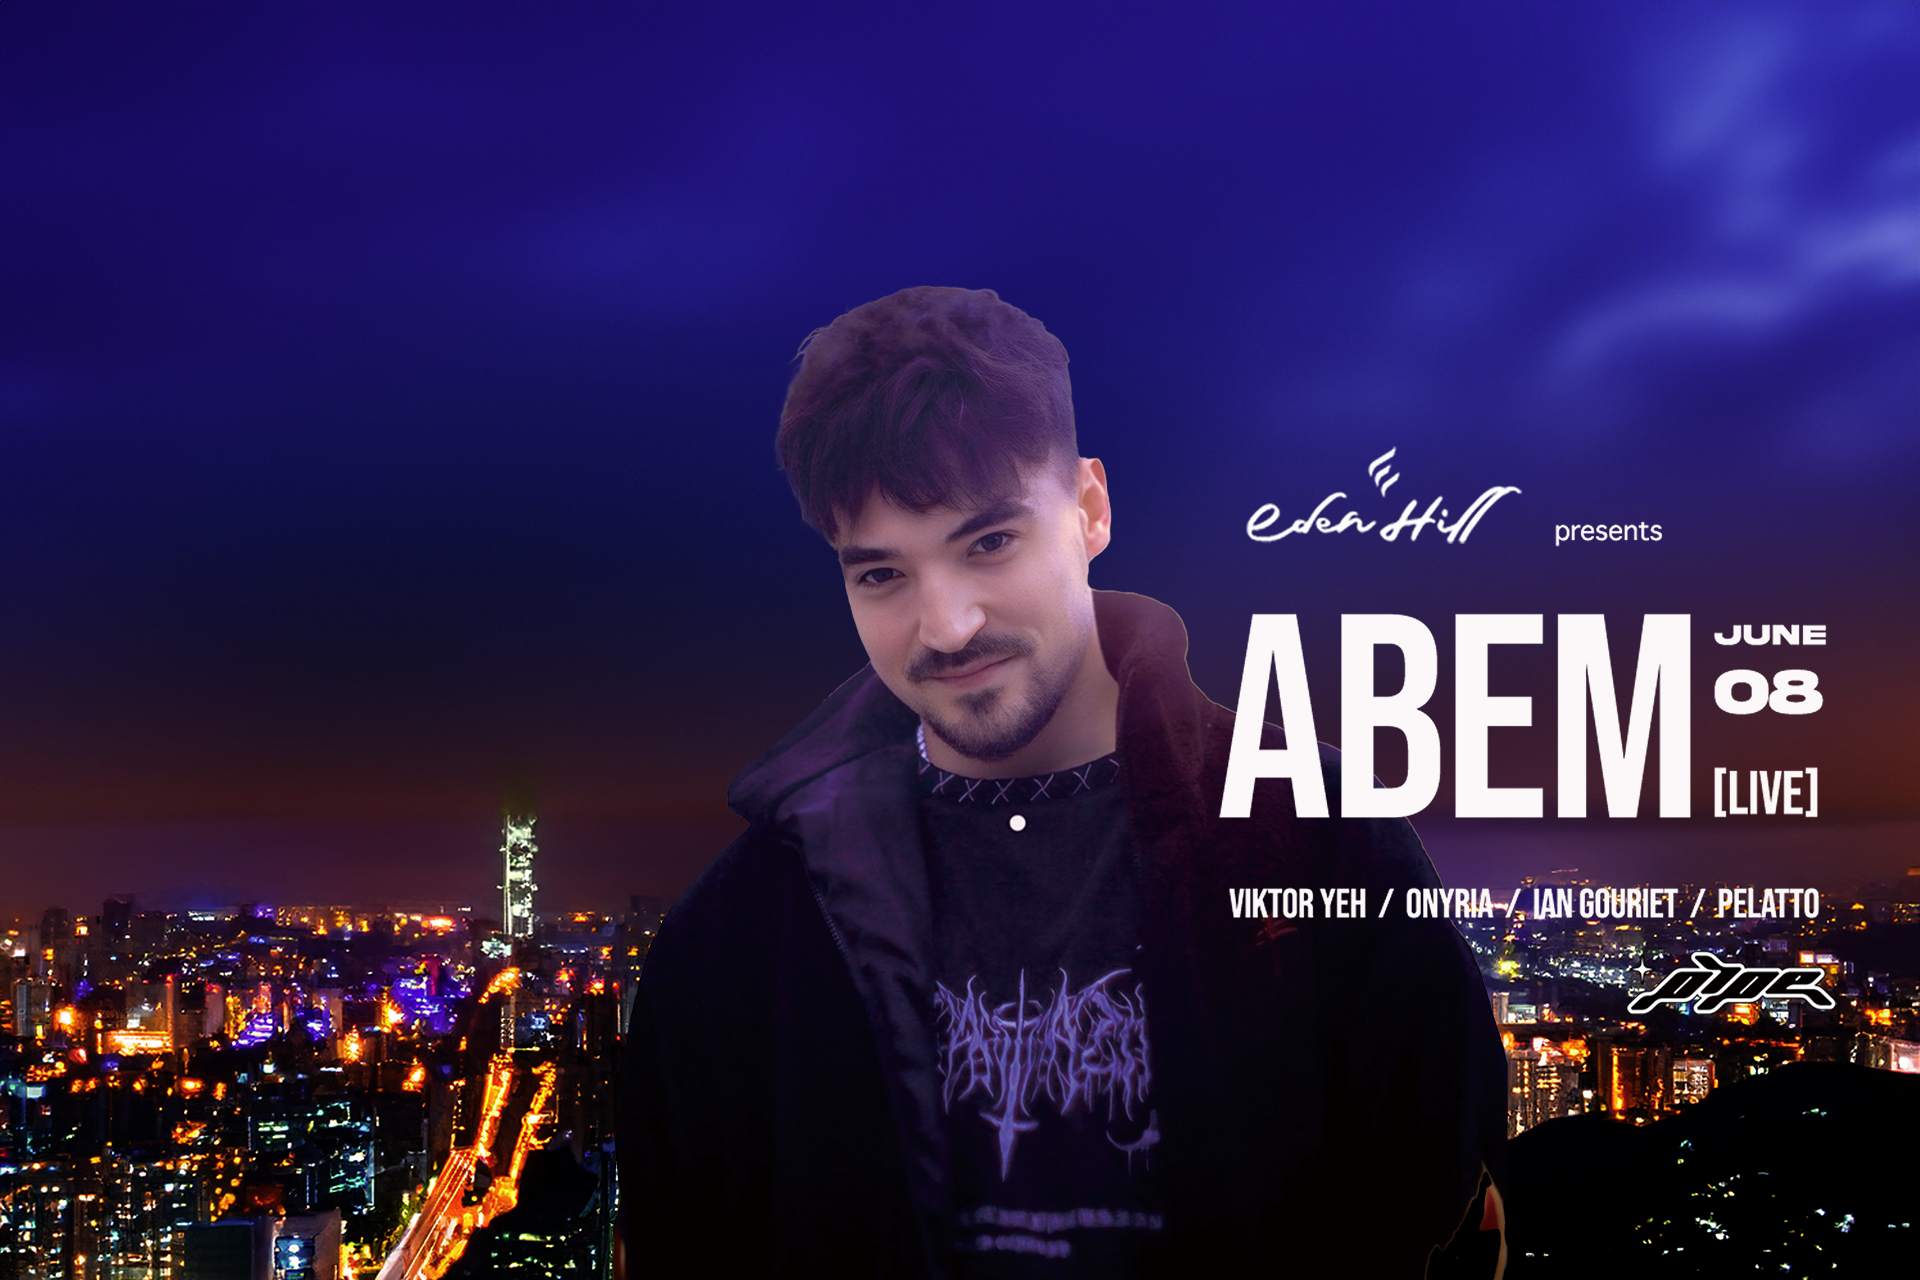 EDEN HILL presents ― ABEM [live] - フライヤー表